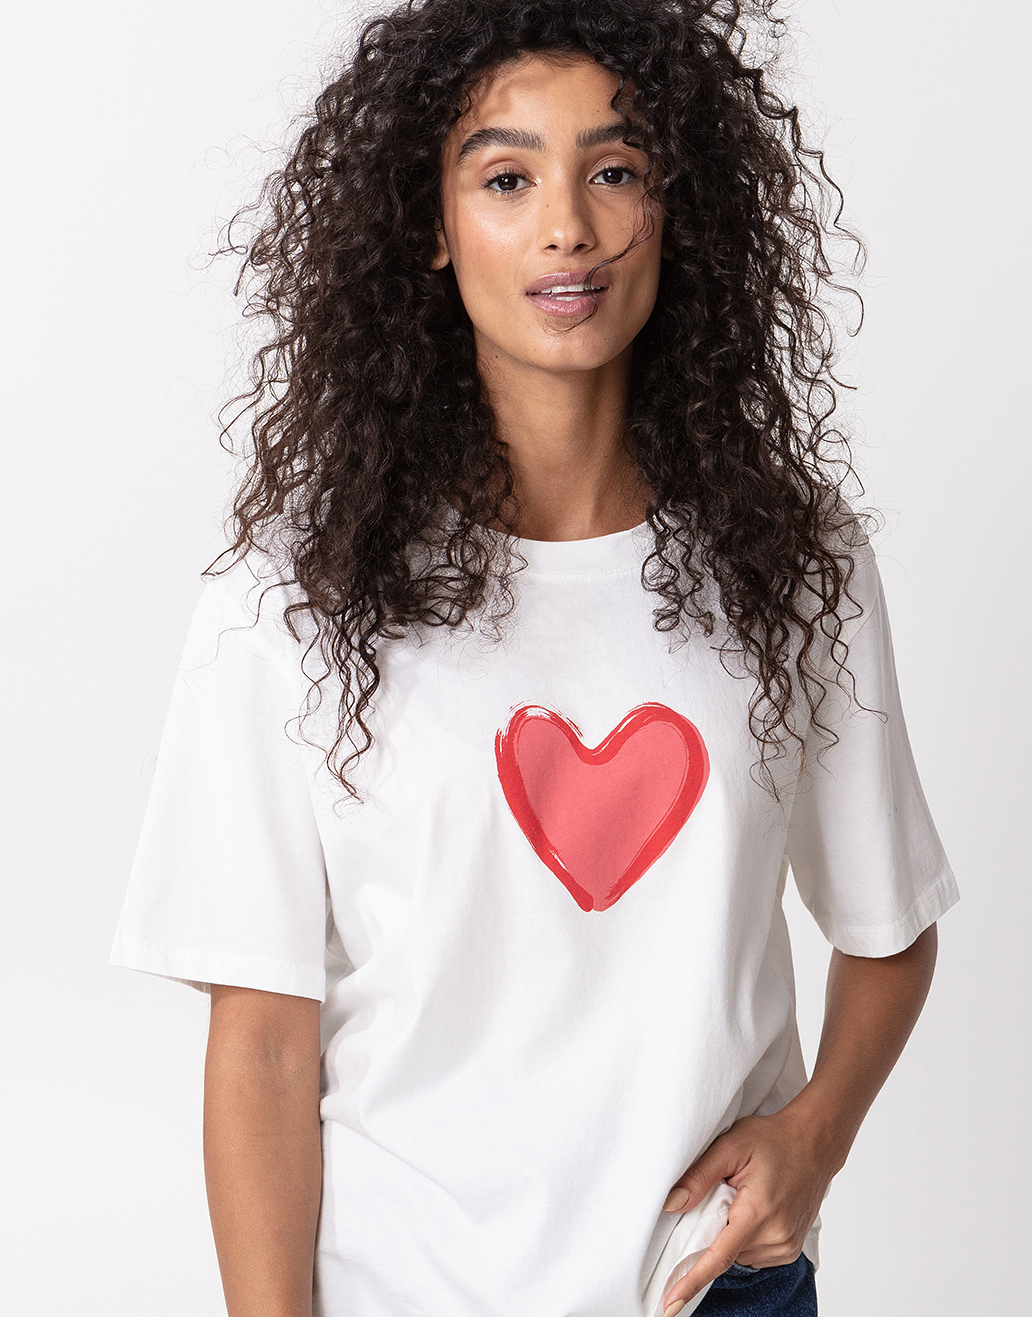 T-paita sydänprintillä Image 0